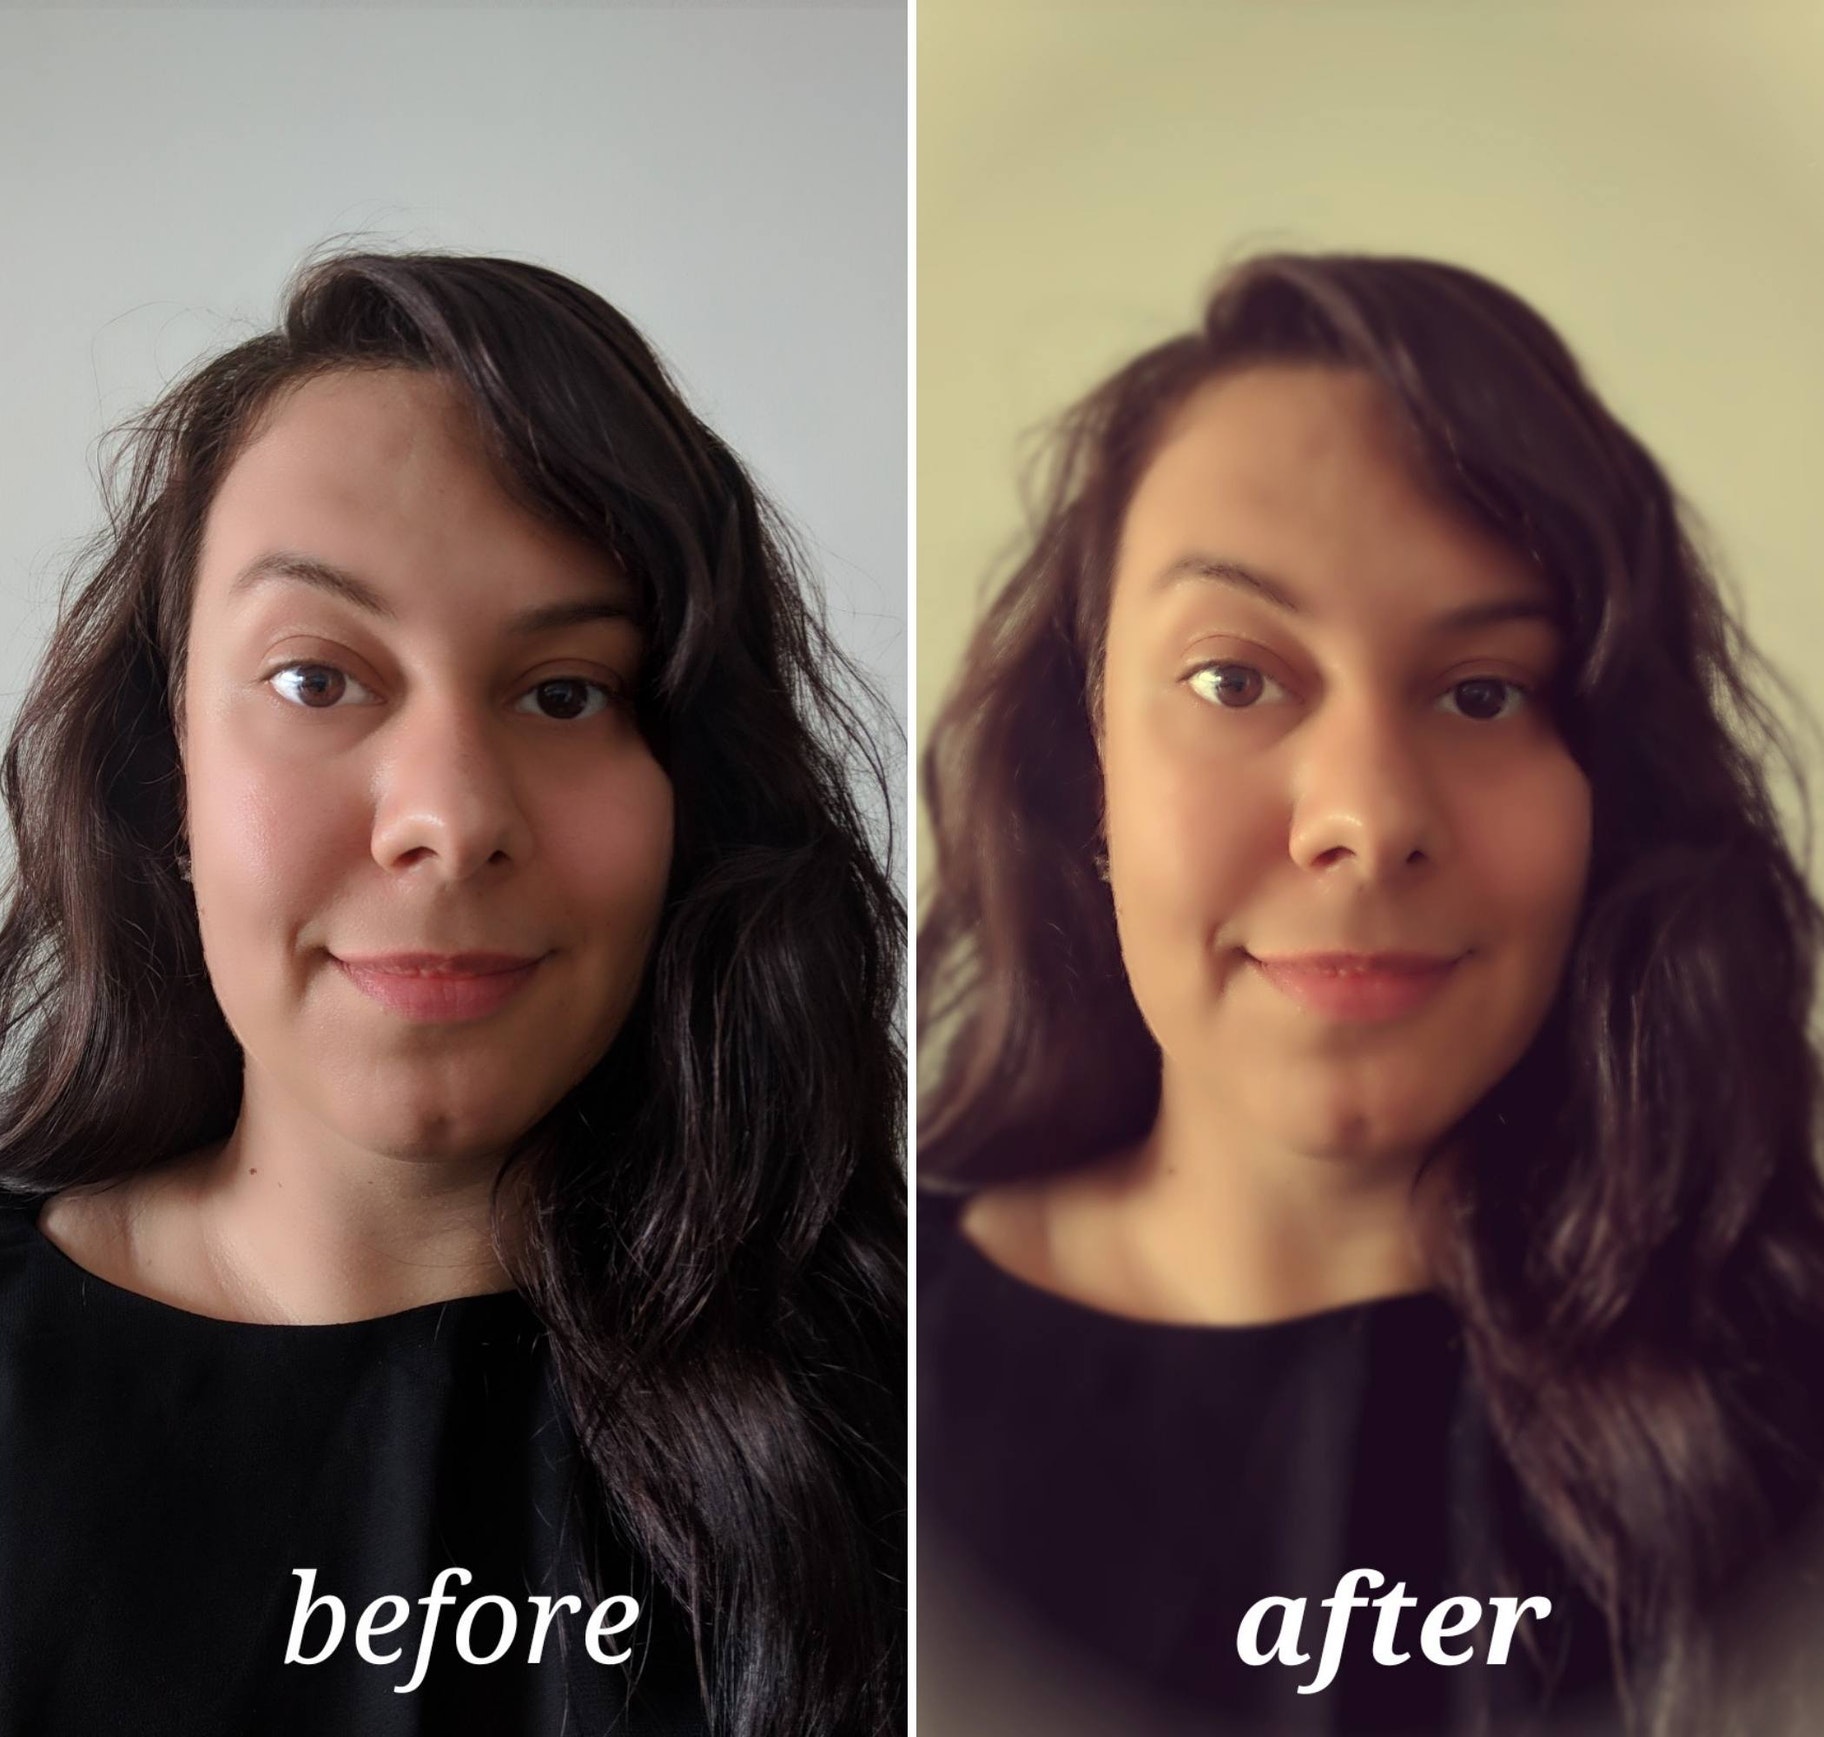 Pixlr antes y después de editar